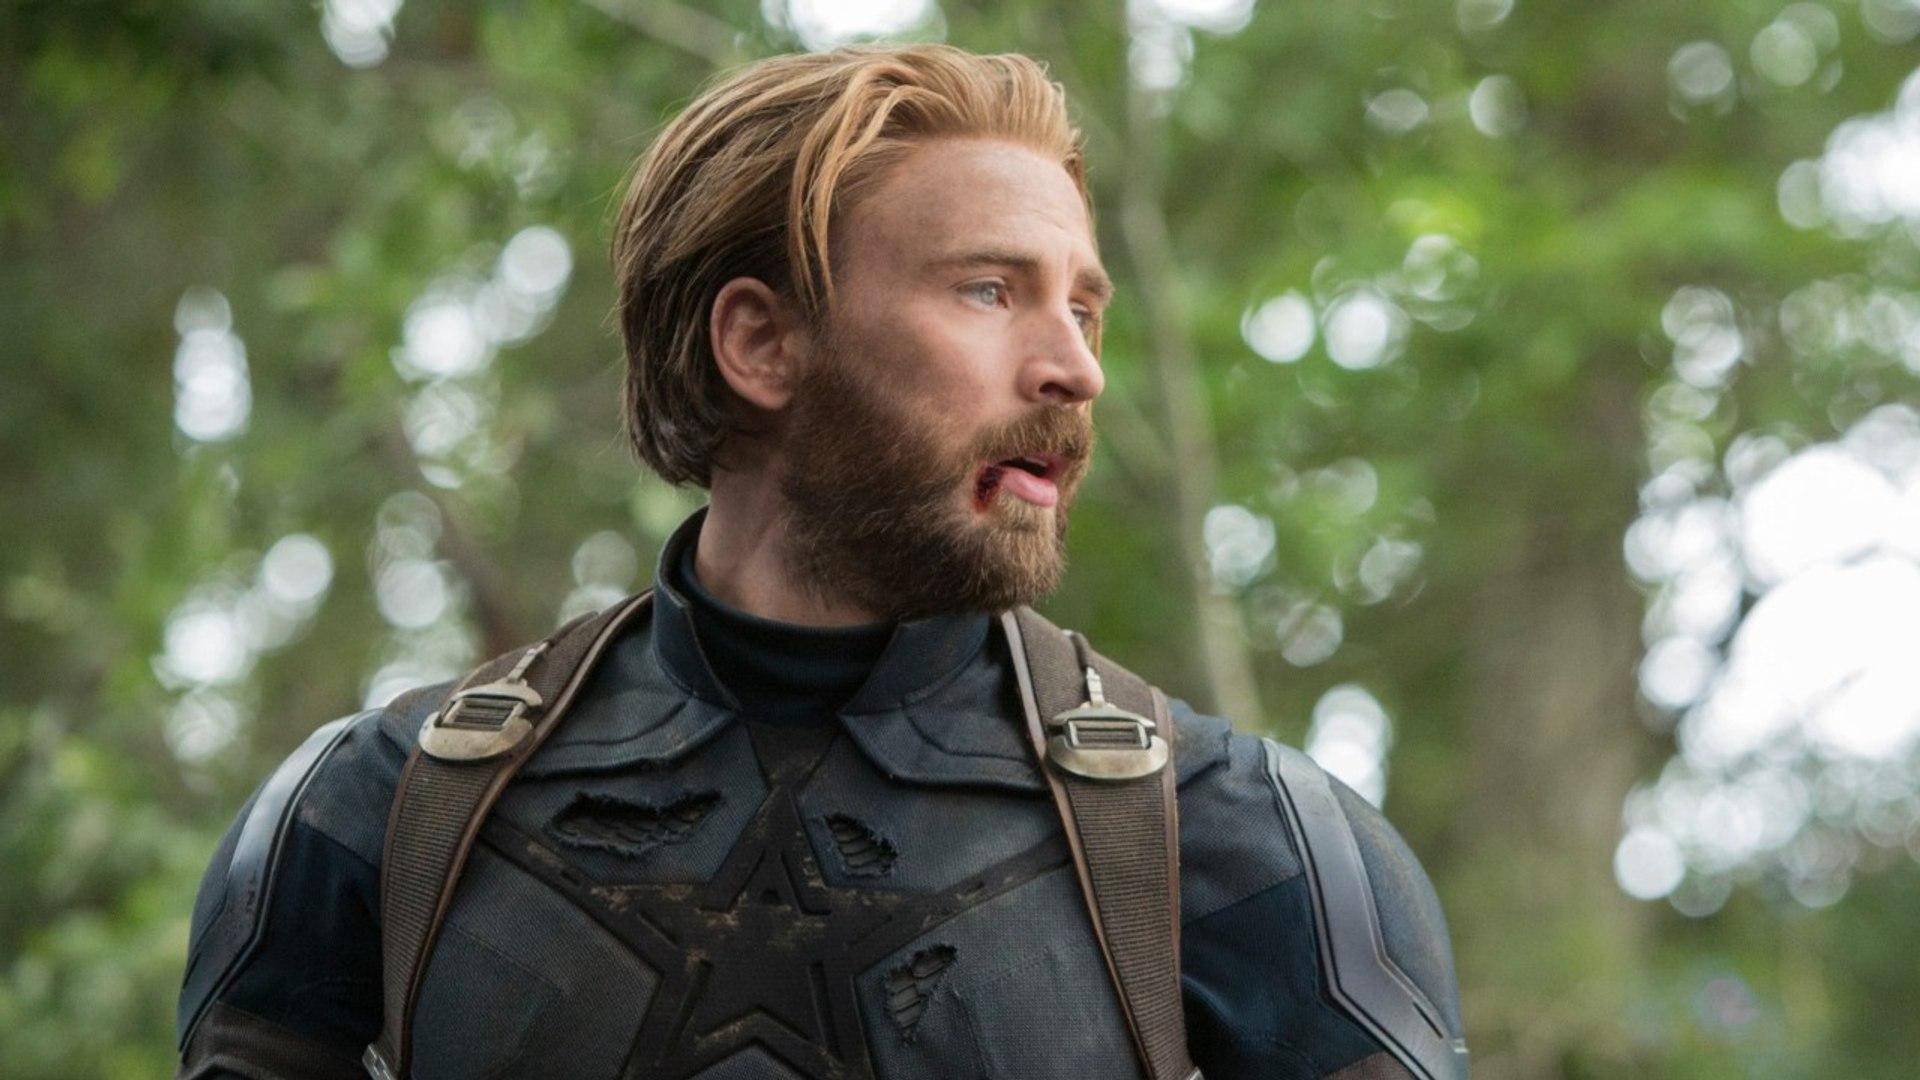 Chris Evans Reveals Why Captain America Has a Beard